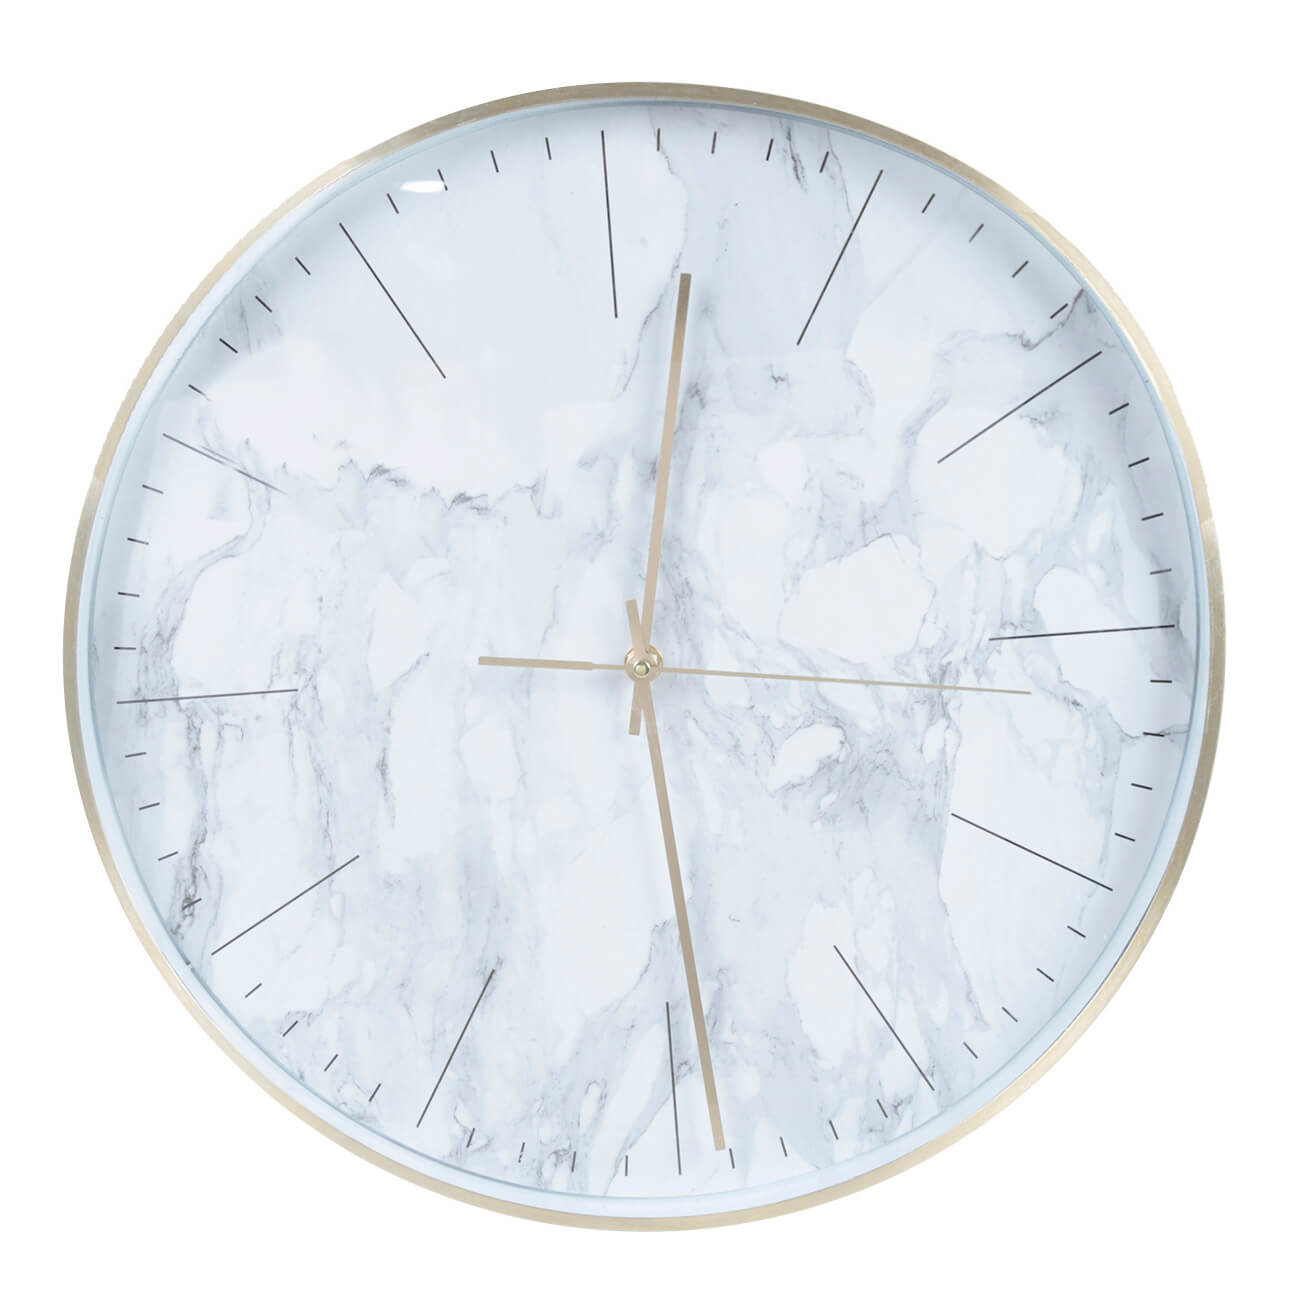 Часы настенные, 40 см, пластик/стекло, круглые, белые, Мрамор, Maniera часы настенные olaff круглые 40х4 5 см арт 152 33037